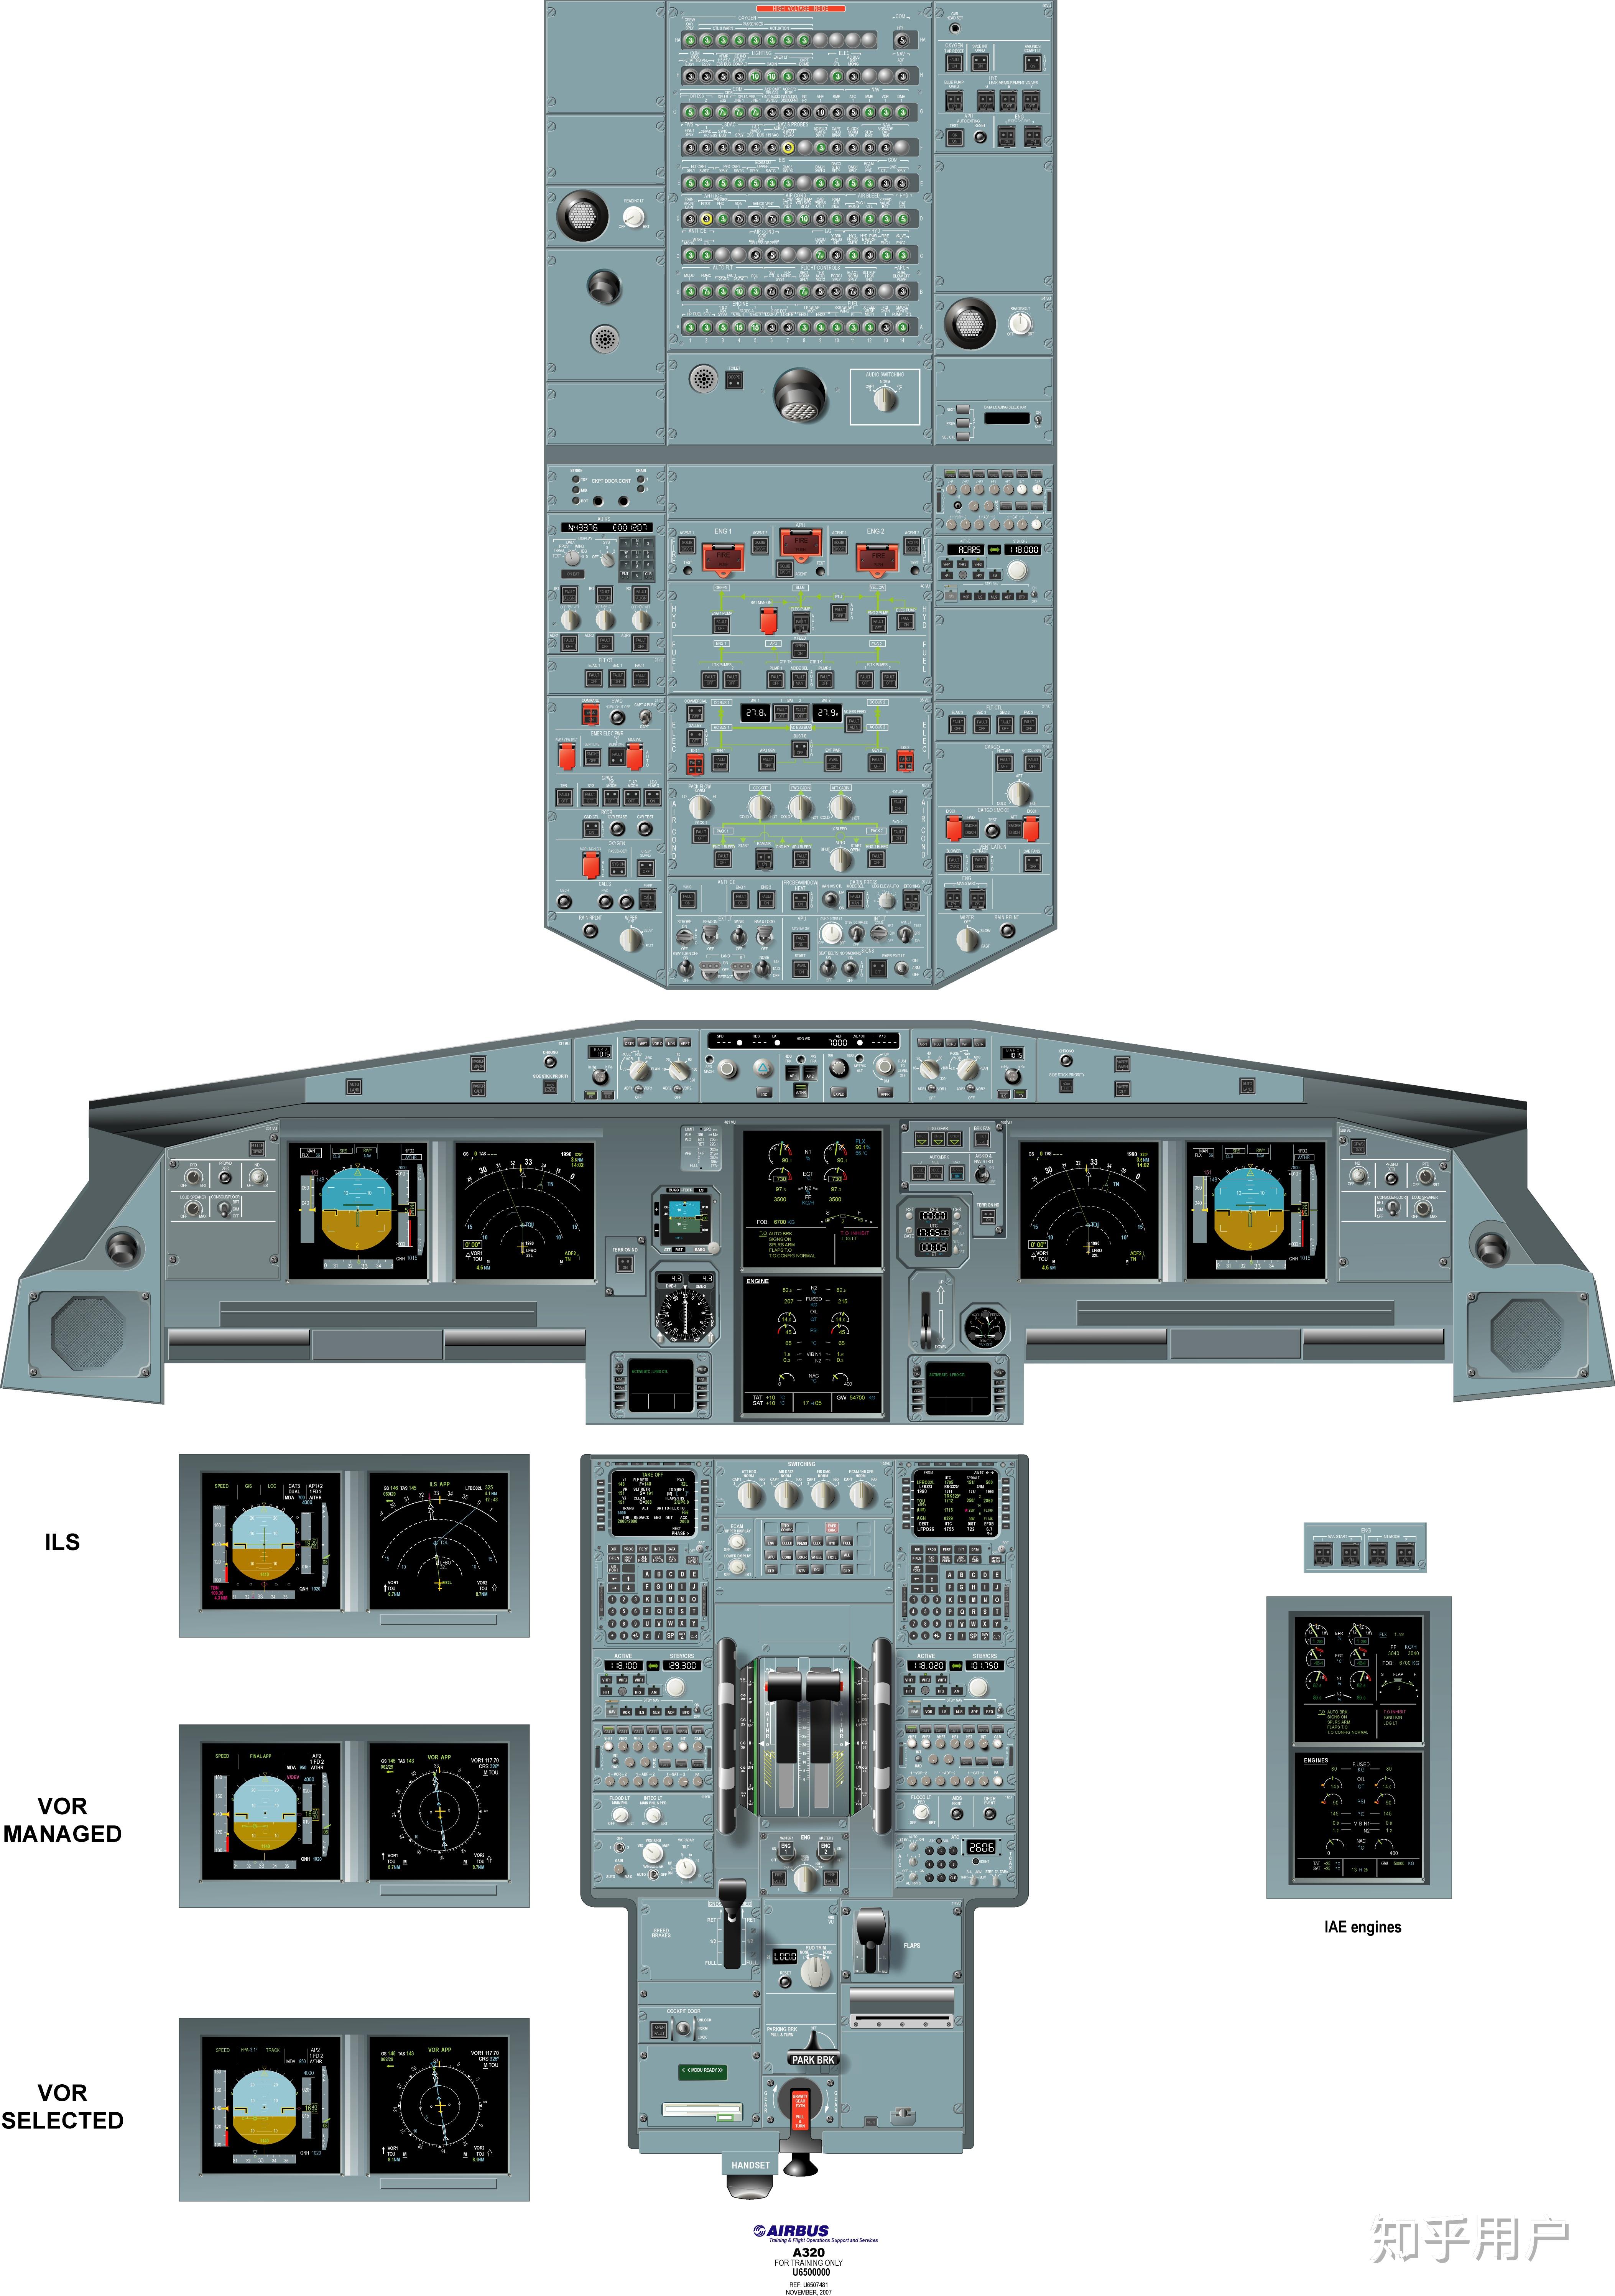 你们谁有民航客机驾驶舱的全图啊? 